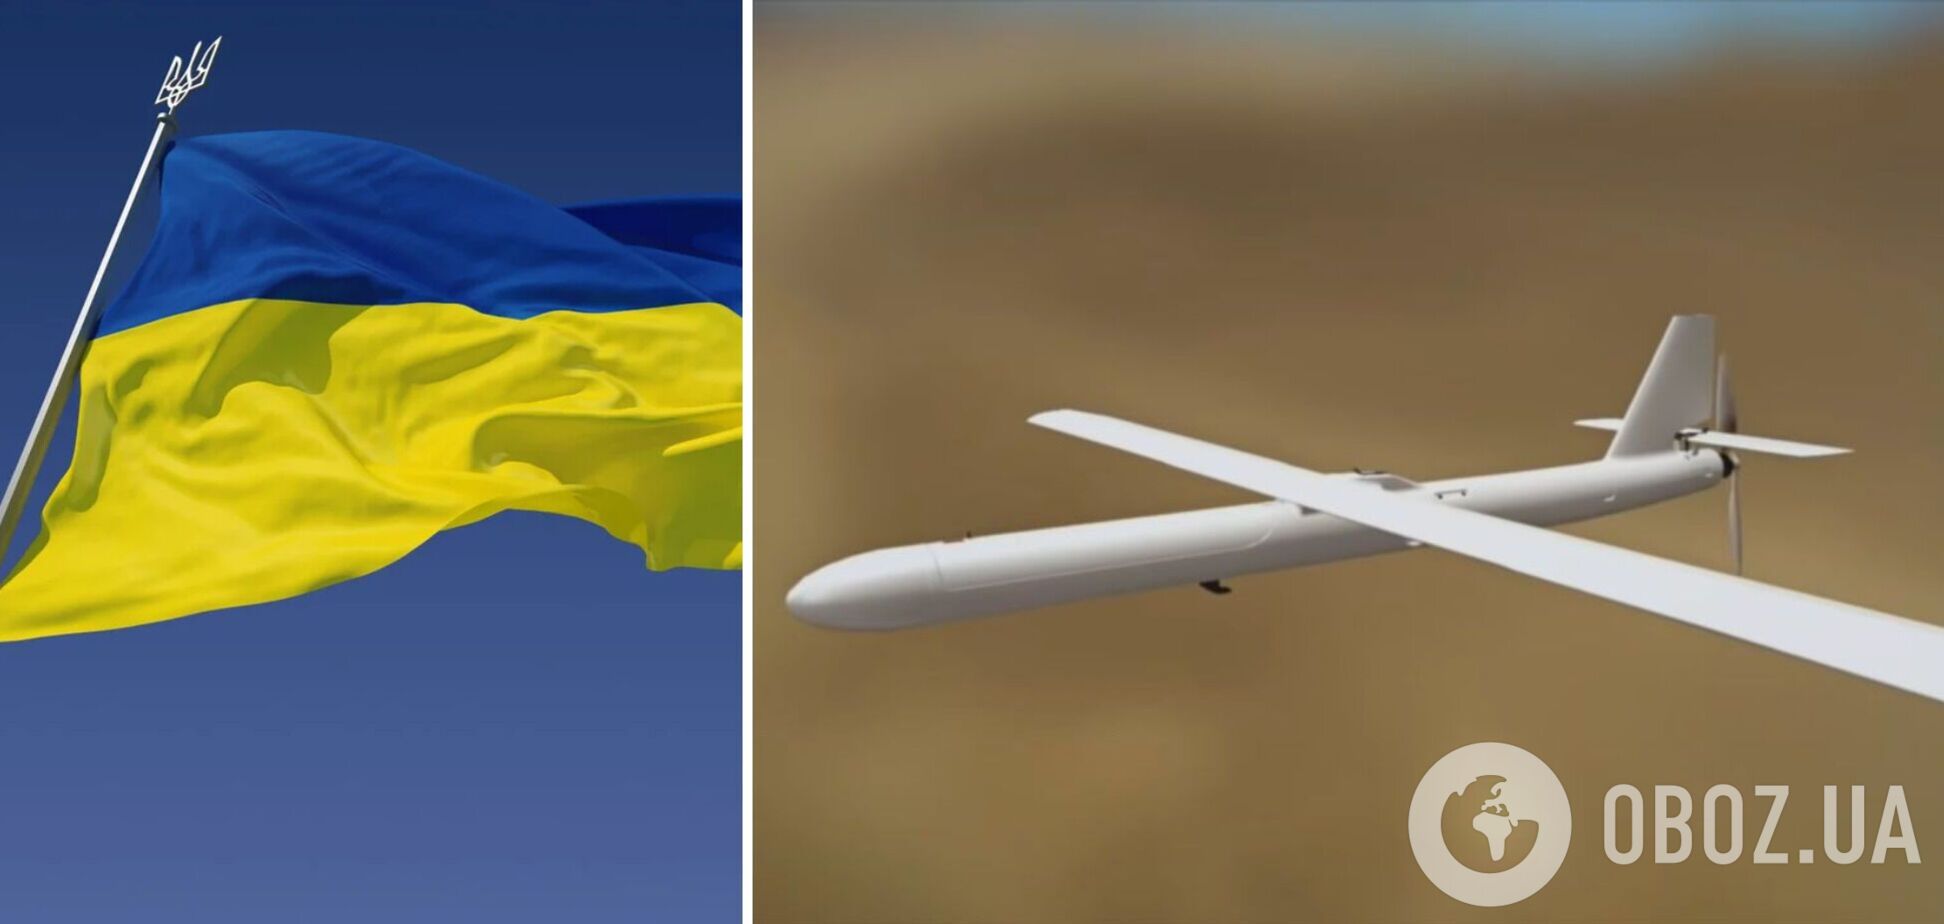 Україна має всі можливості випускати власні 'шахеди', ця зброя дійсно може зламати хід війни, – експерт 